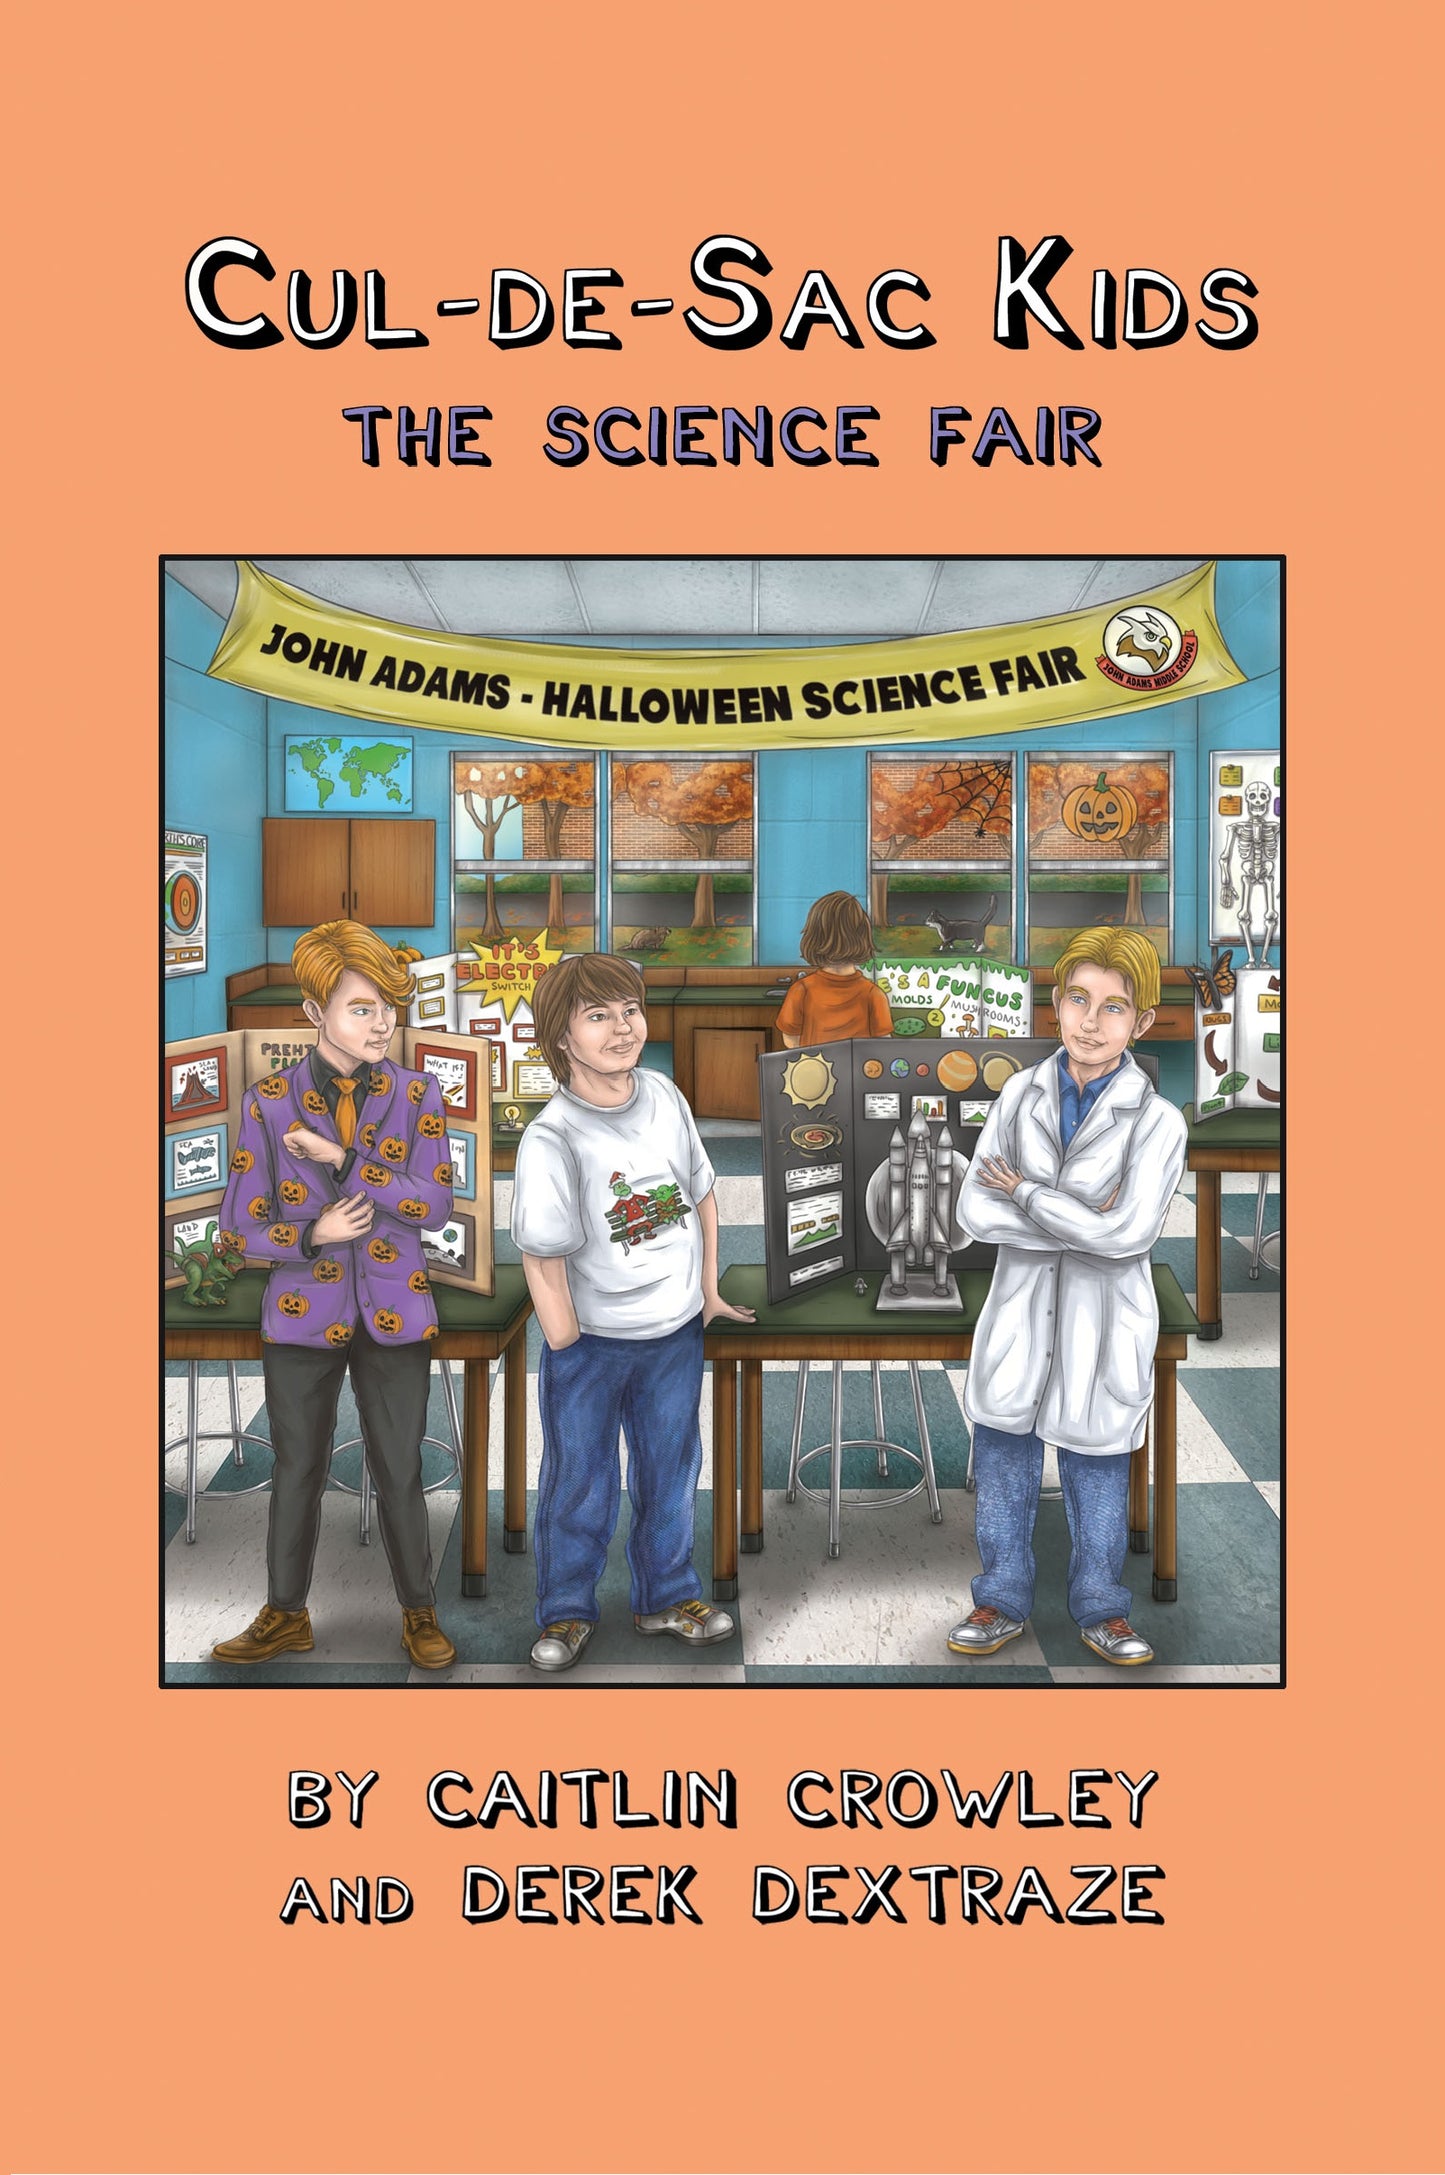 Book 3 - Cul-de-sac Kids: The Sceince Fair  